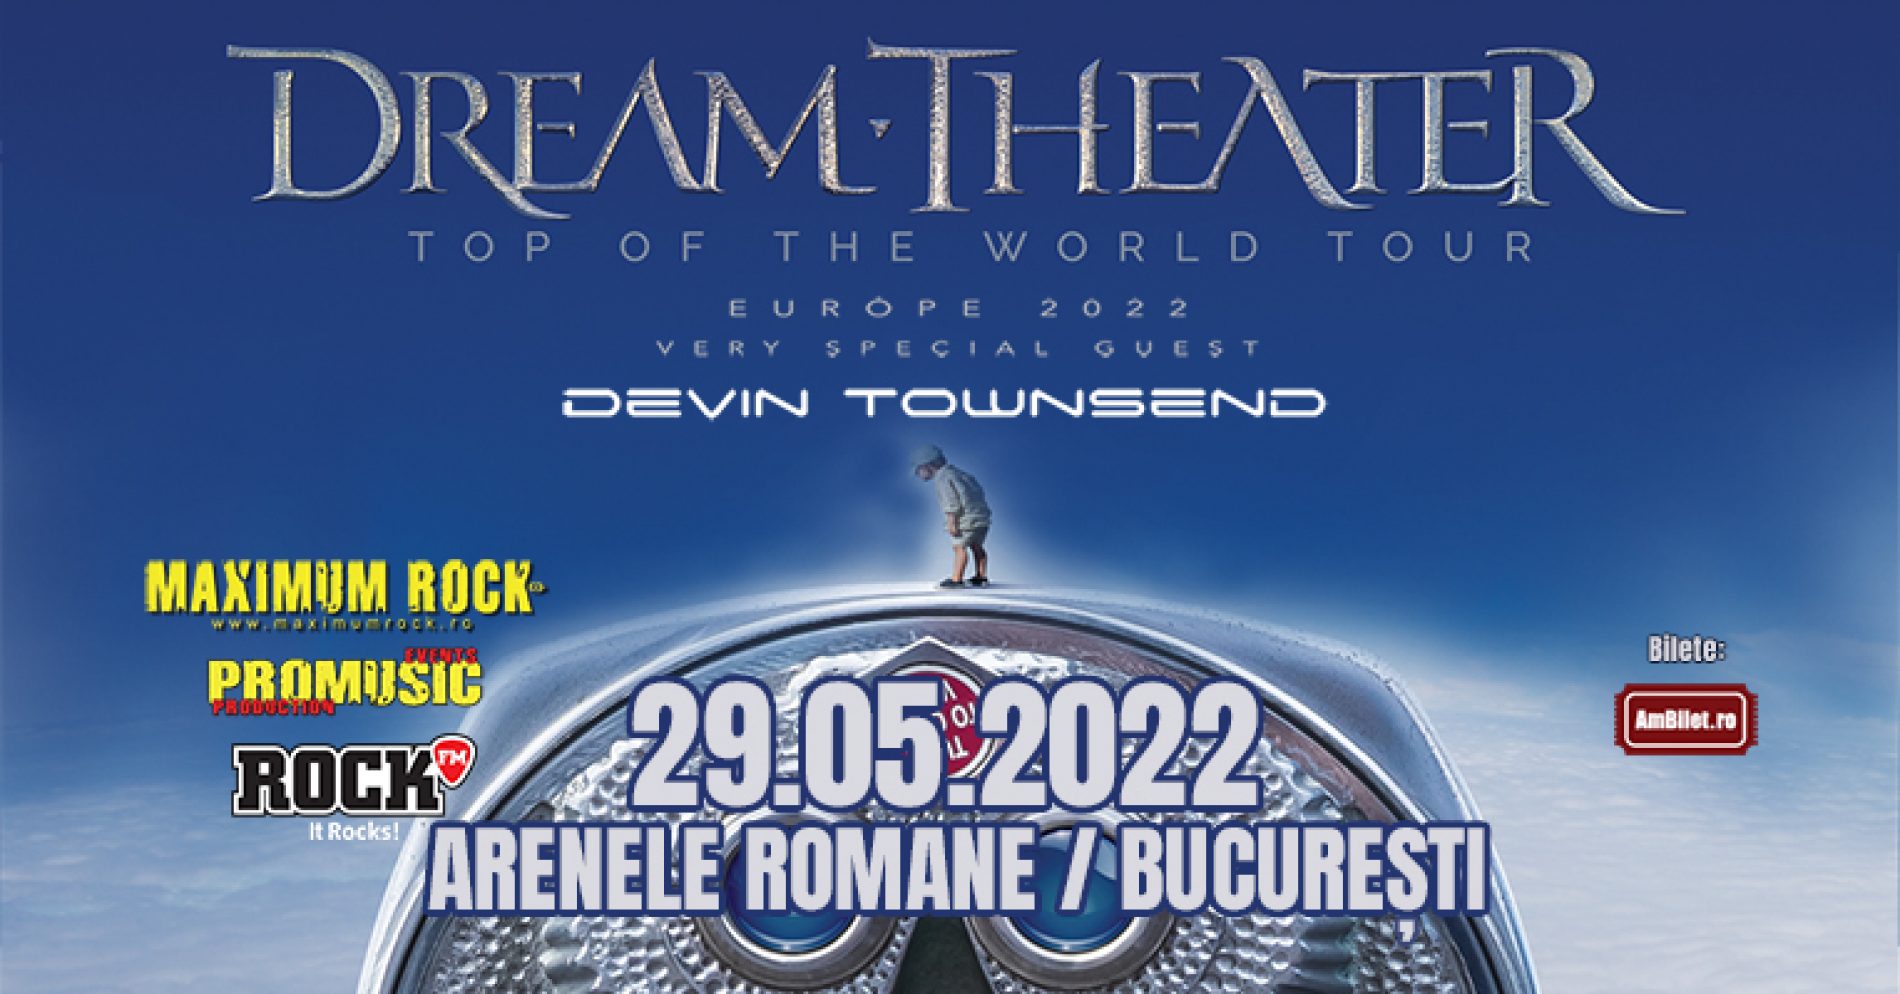 Concertul Dream Theater se mută la Arenele Romane